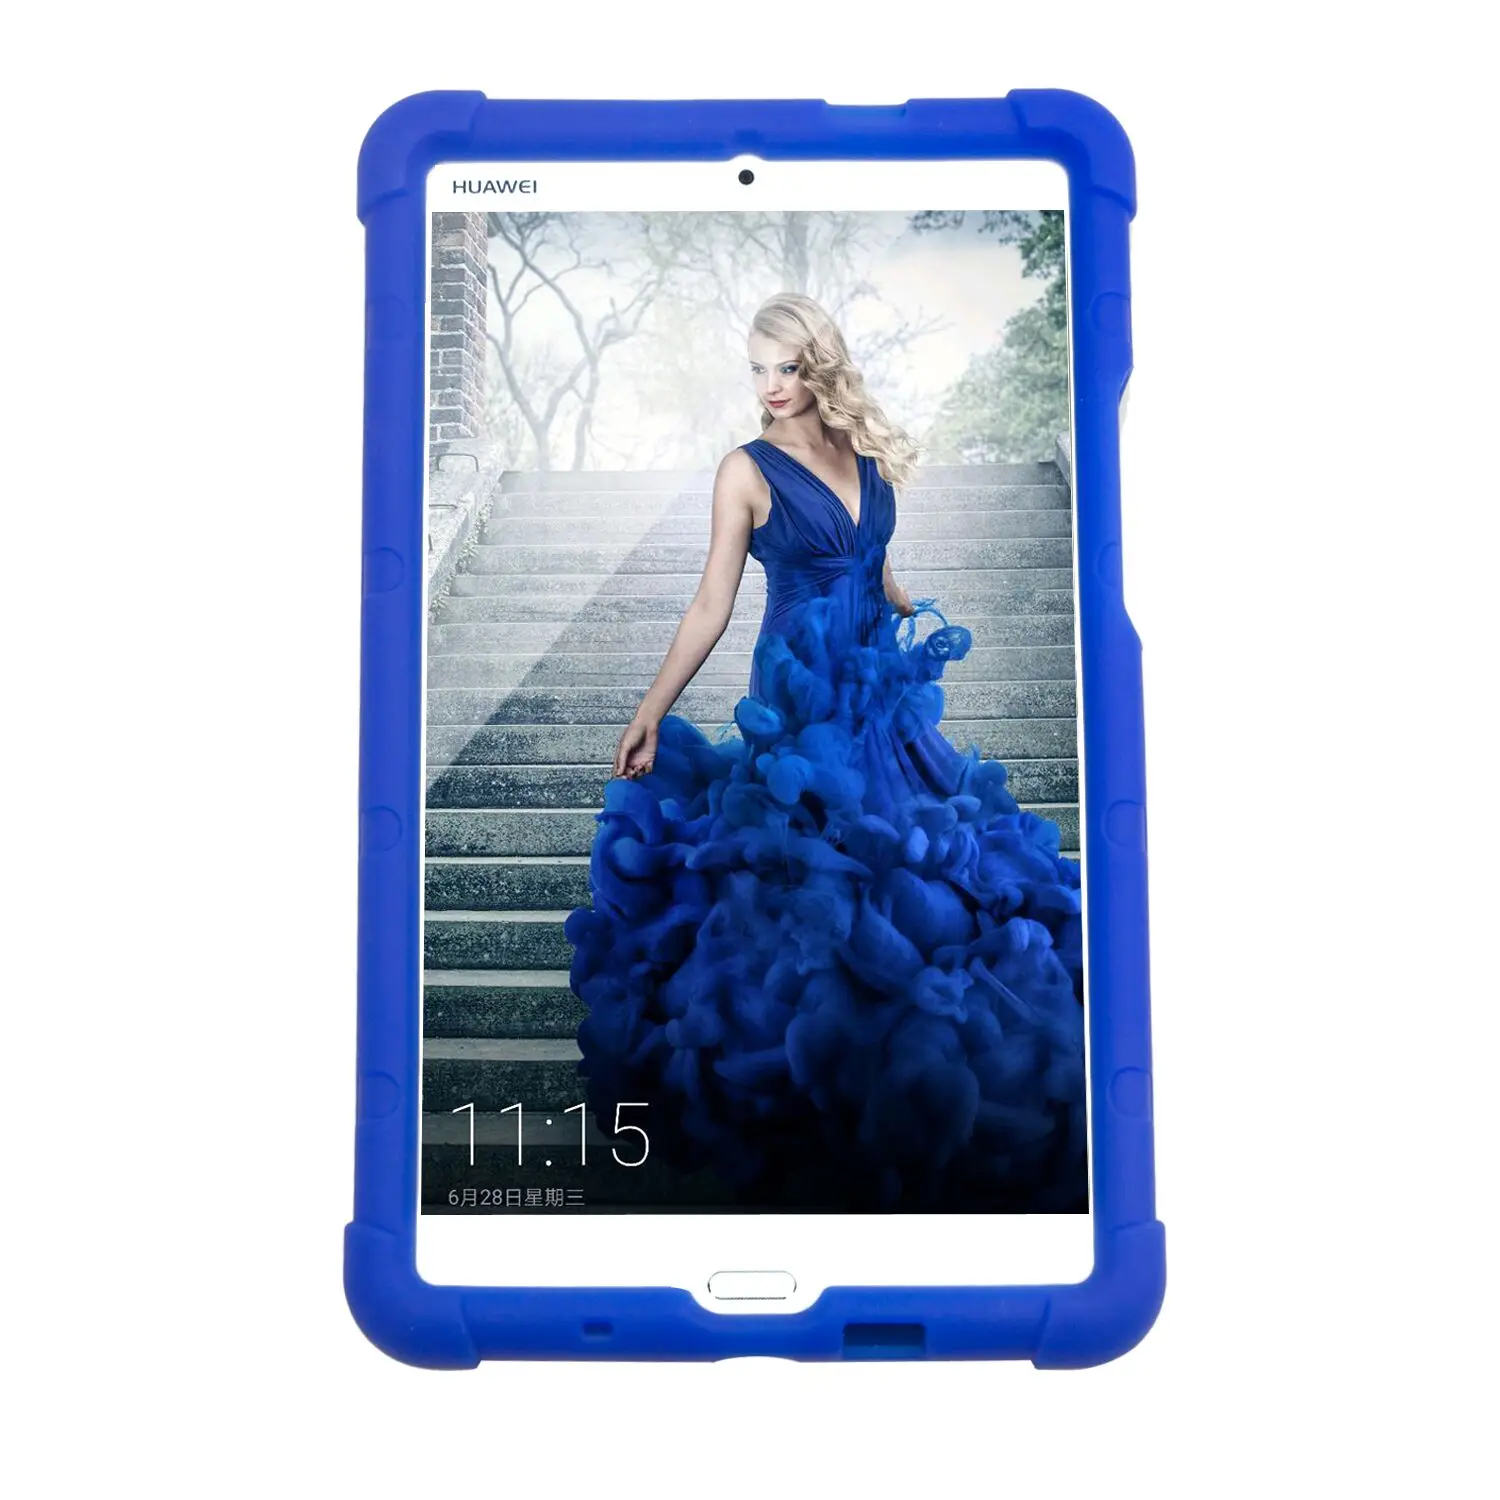 Подпрыгивающий чехол для huawei MediaPad M3 BTV-W09 детский бампер BTV-DL09 8,4 дюймов чехол для планшета Силиконовый прочный чехол синий - Цвет: Blue